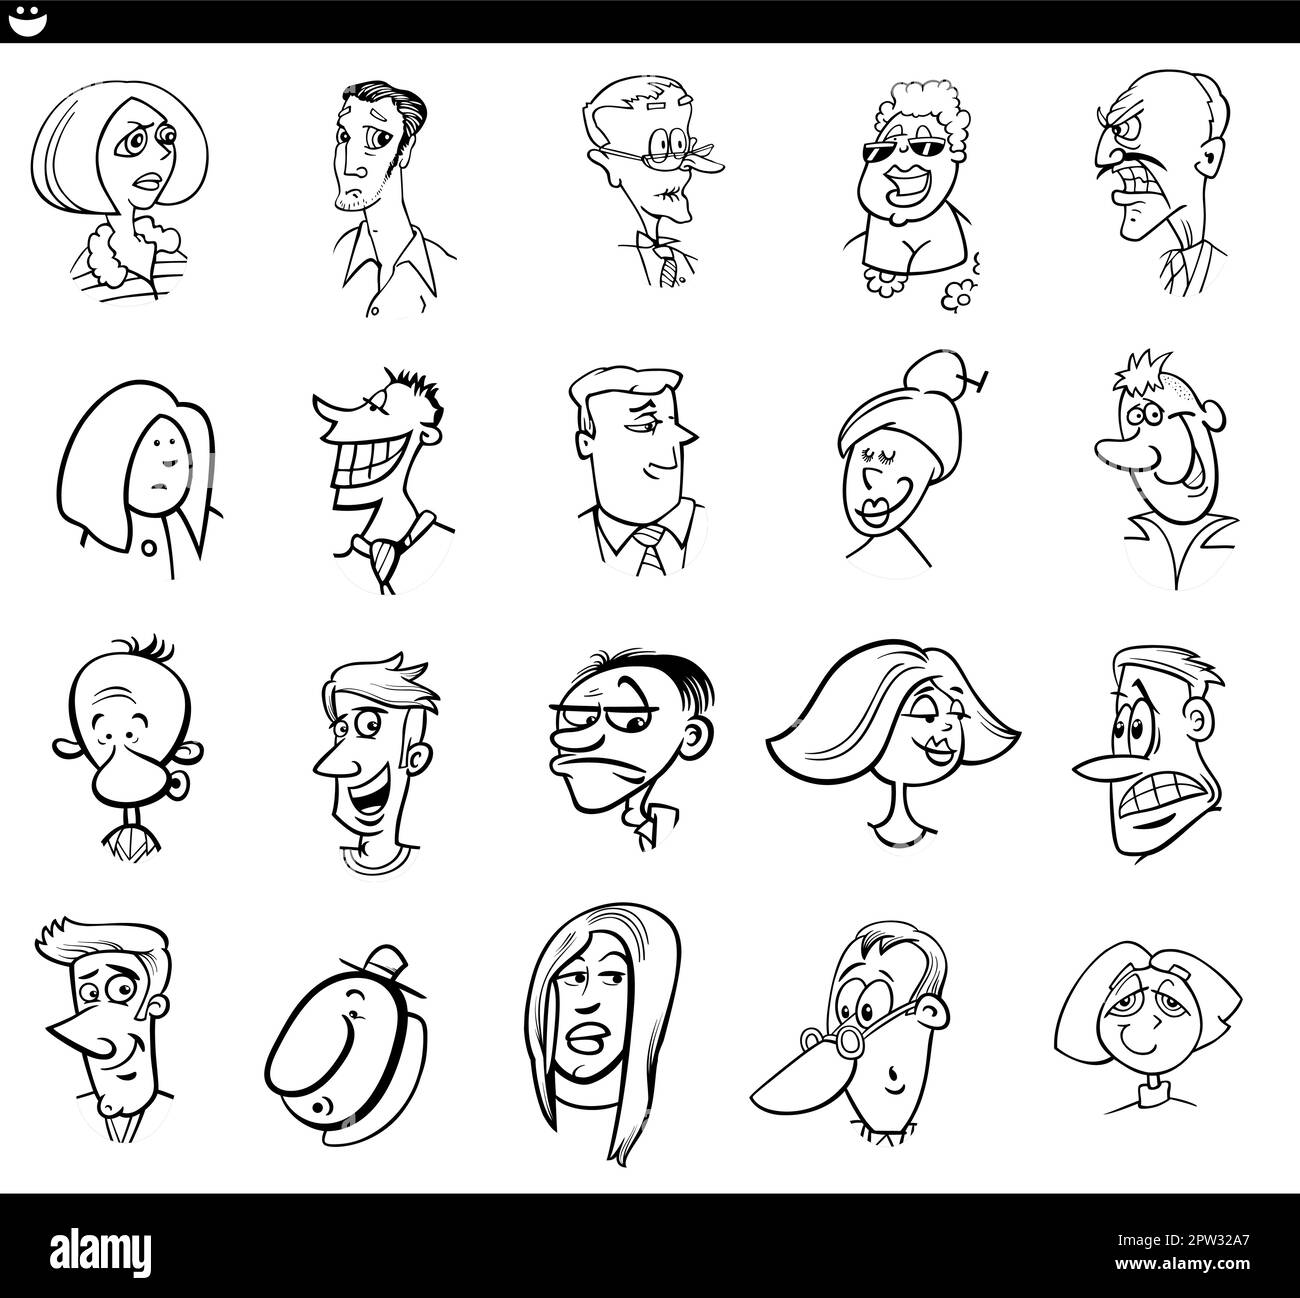 Cartoon-Figuren Gesichter und Stimmungen werden gesetzt Stock Vektor